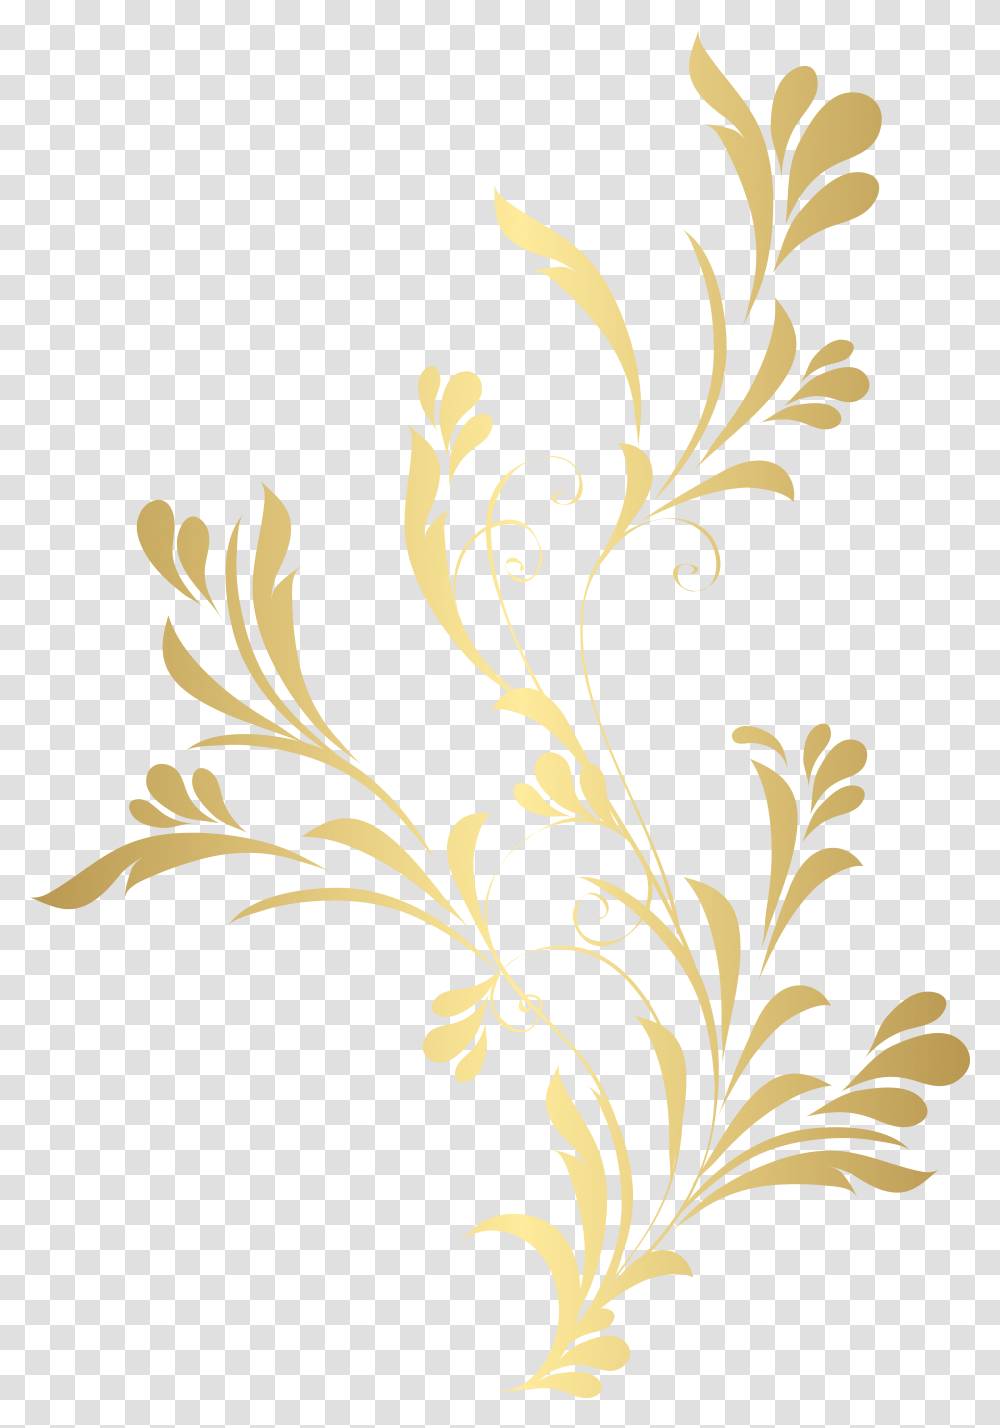 Floral Gold Element Clip Art Background Flower Gold, Floral Design, Pattern Transparent Png